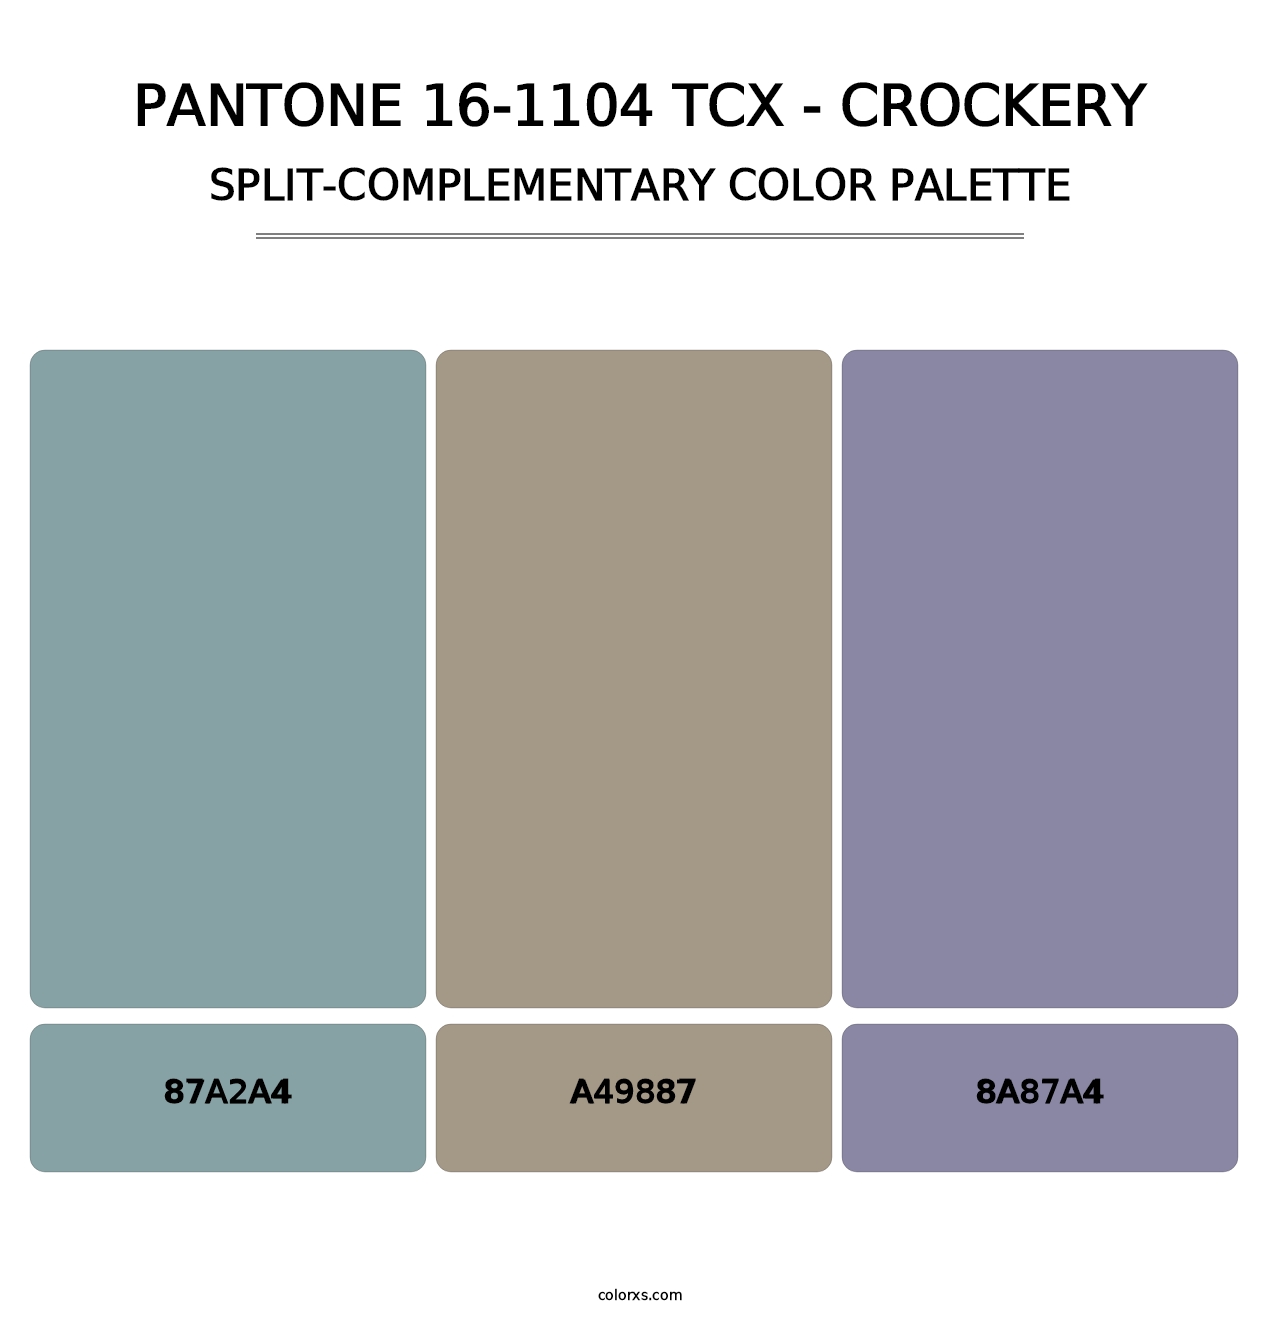 PANTONE 16-1104 TCX - Crockery - Split-Complementary Color Palette